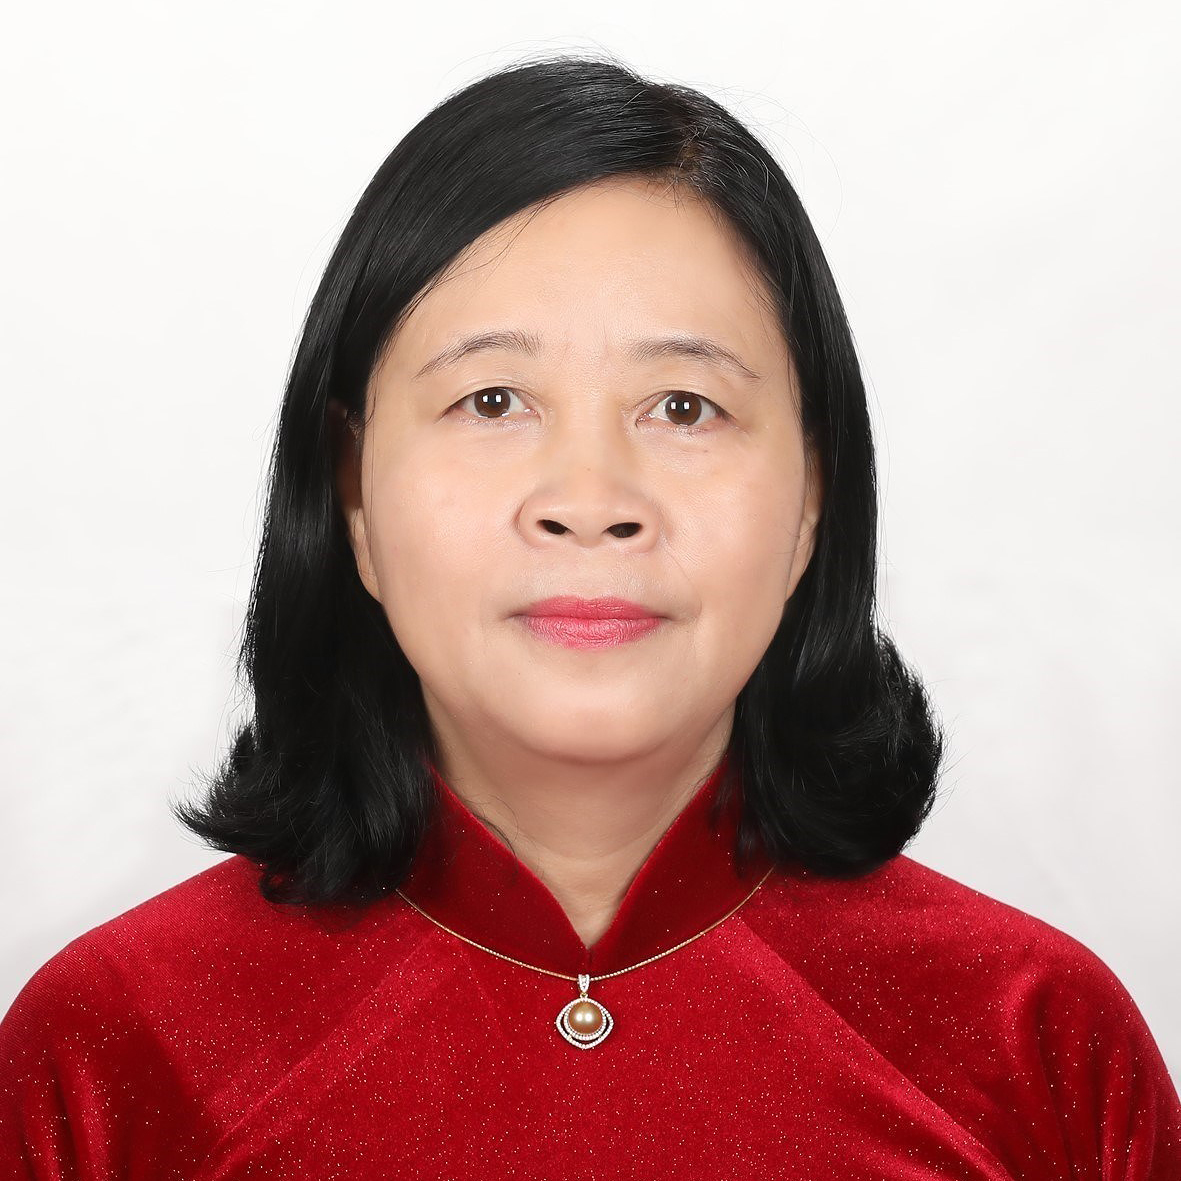 Bà Bùi Thị Minh Hoài